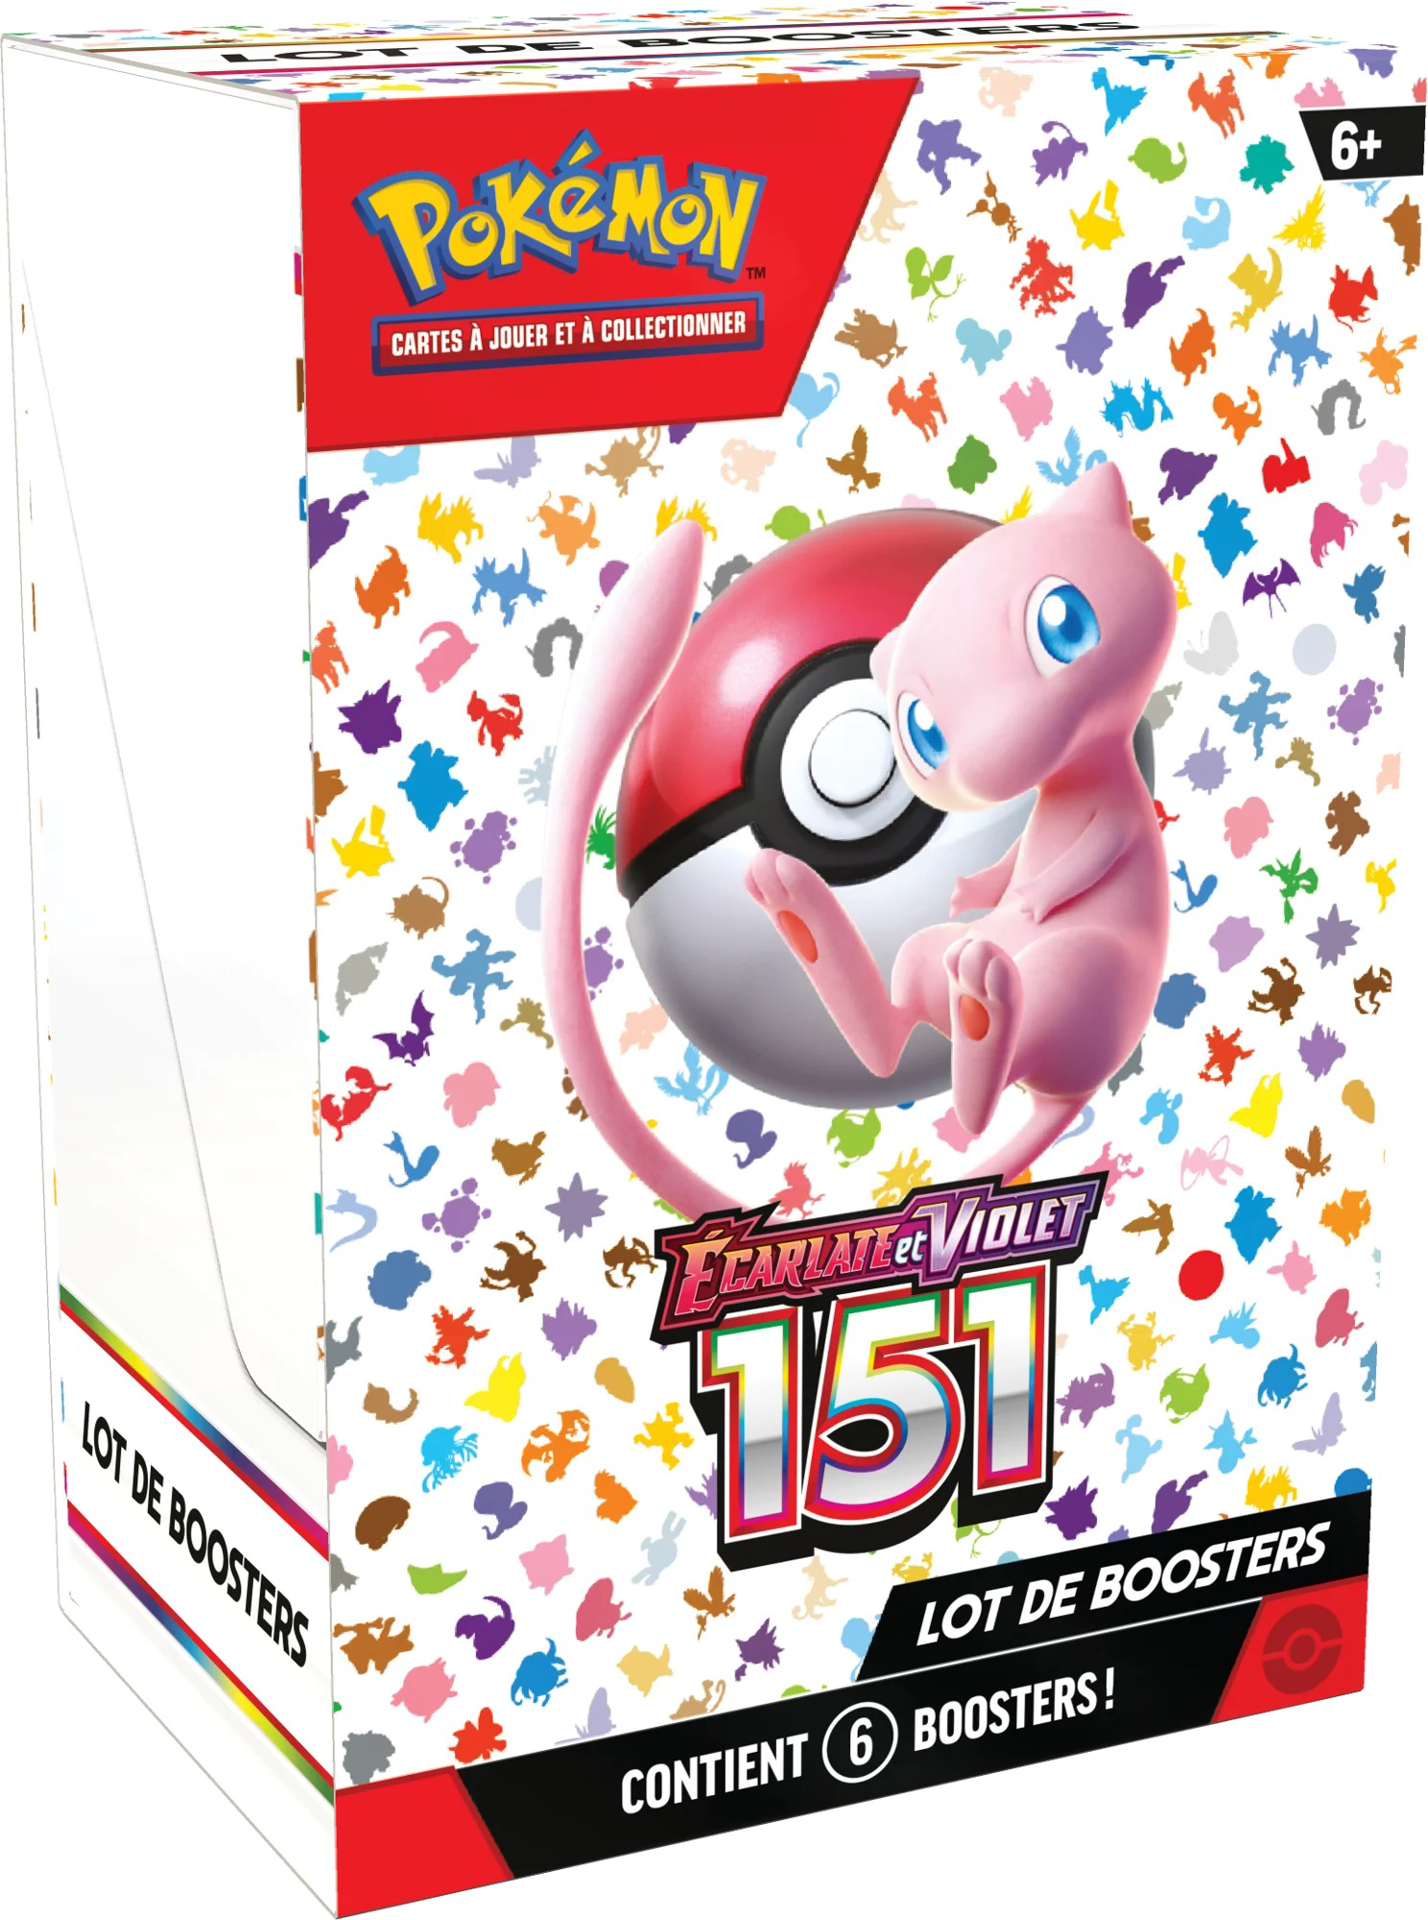 Pokémon JCC : Lot de boosters Écarlate et Violet - 151